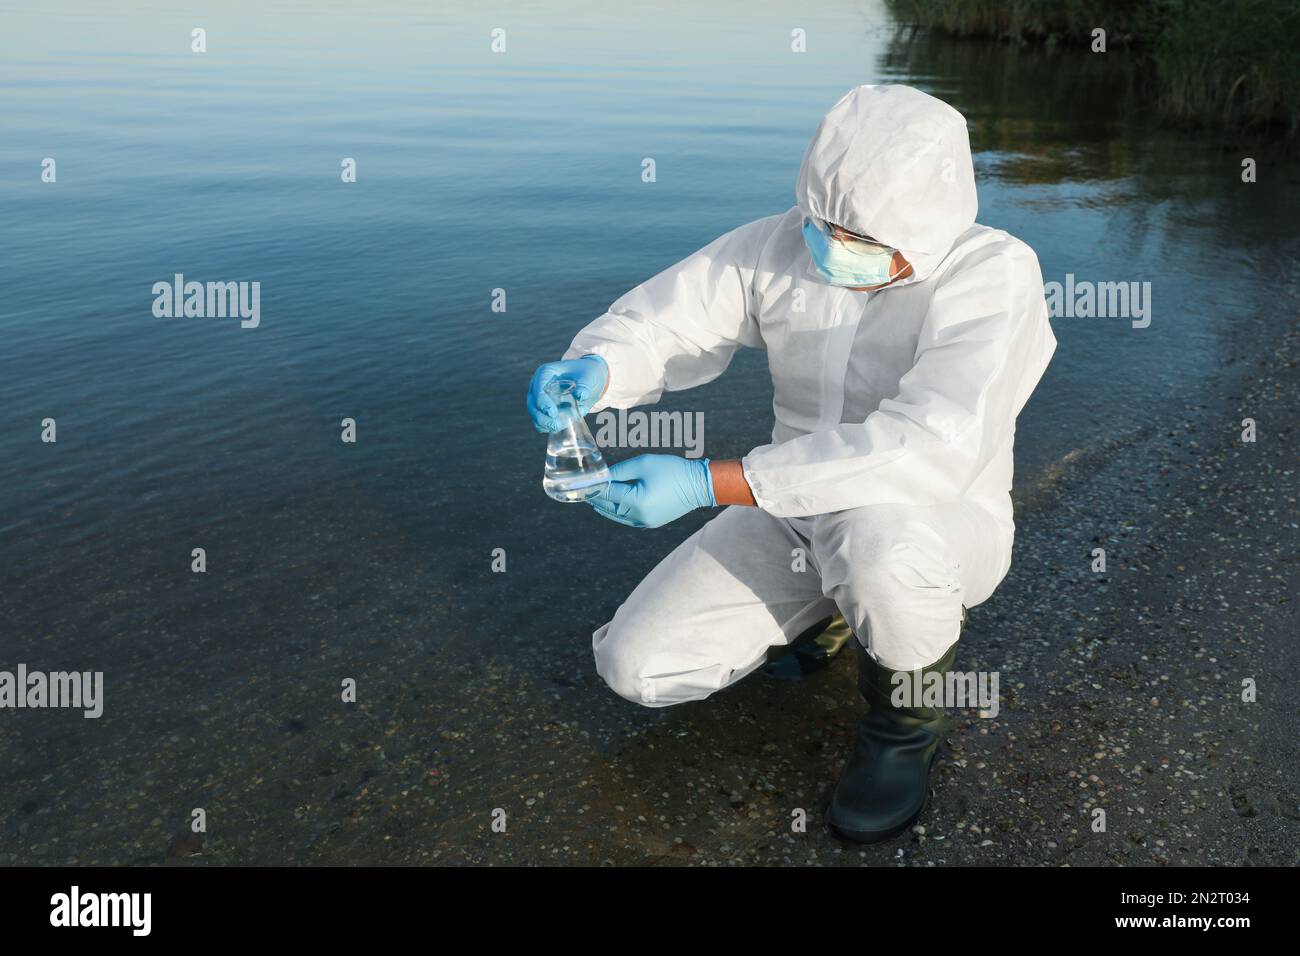 Wissenschaftler im chemischen Schutzanzug mit konischem Kolben, der zur Analyse Proben aus dem Fluss nimmt Stockfoto